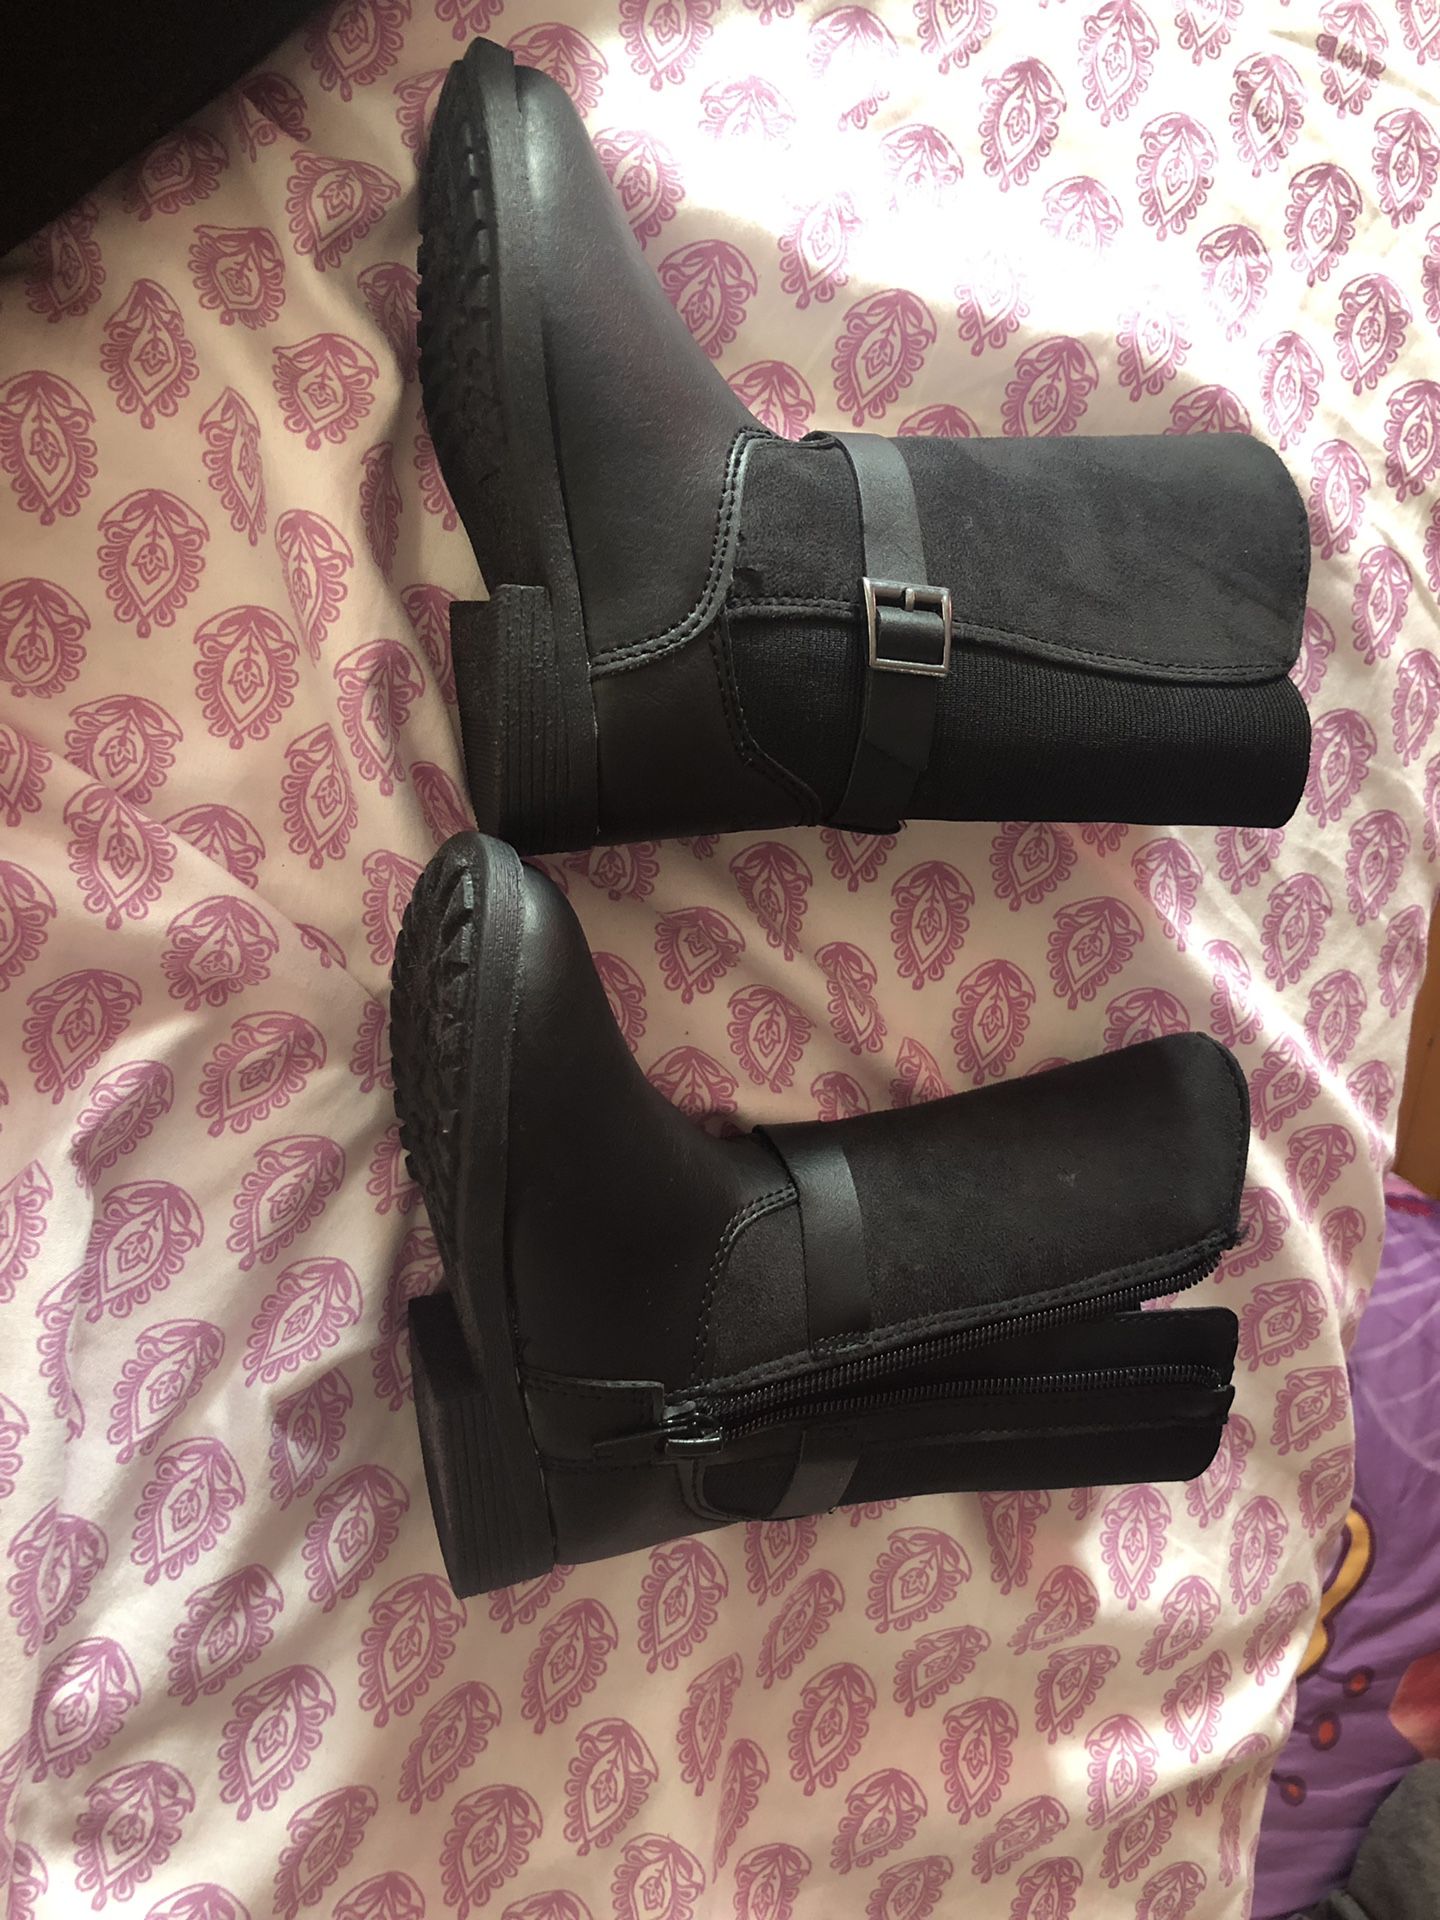 Osh Kosh B’gosh toddler girls size 7 fall boots